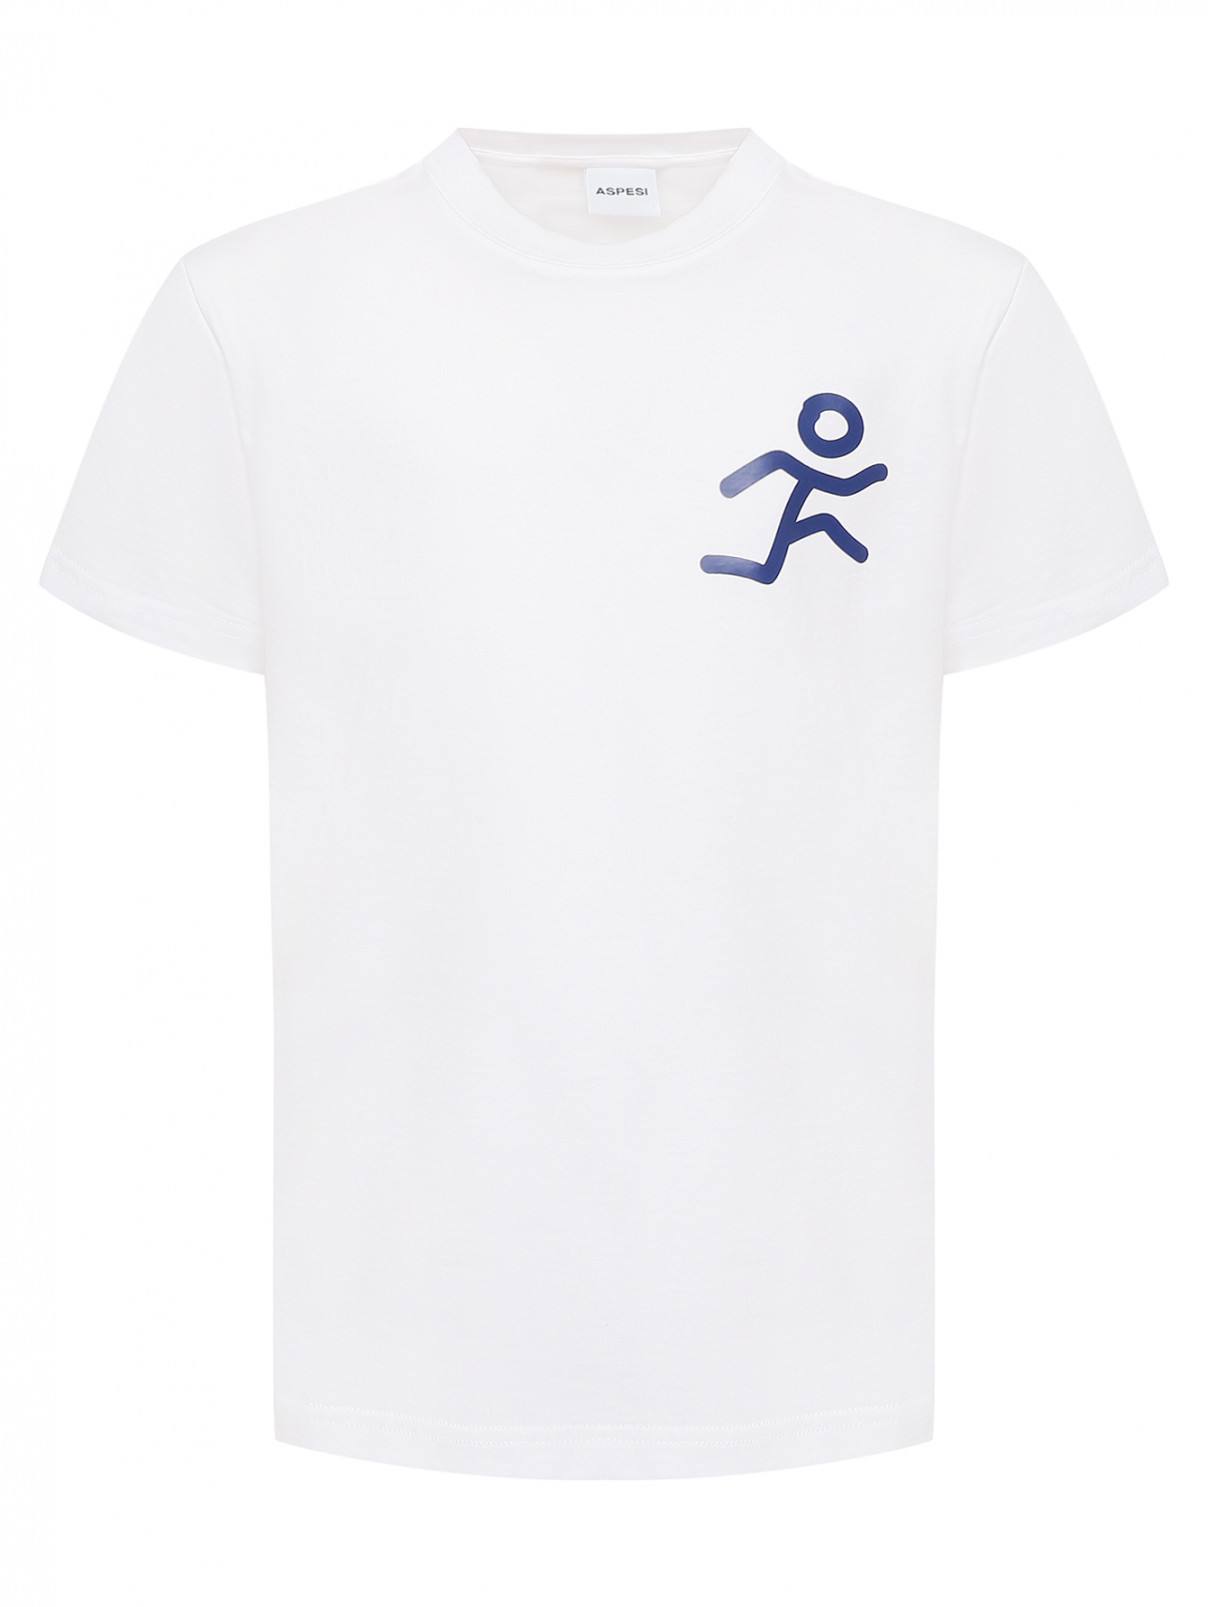 Хлопковая футболка с принтом Aspesi  –  Общий вид  – Цвет:  Белый